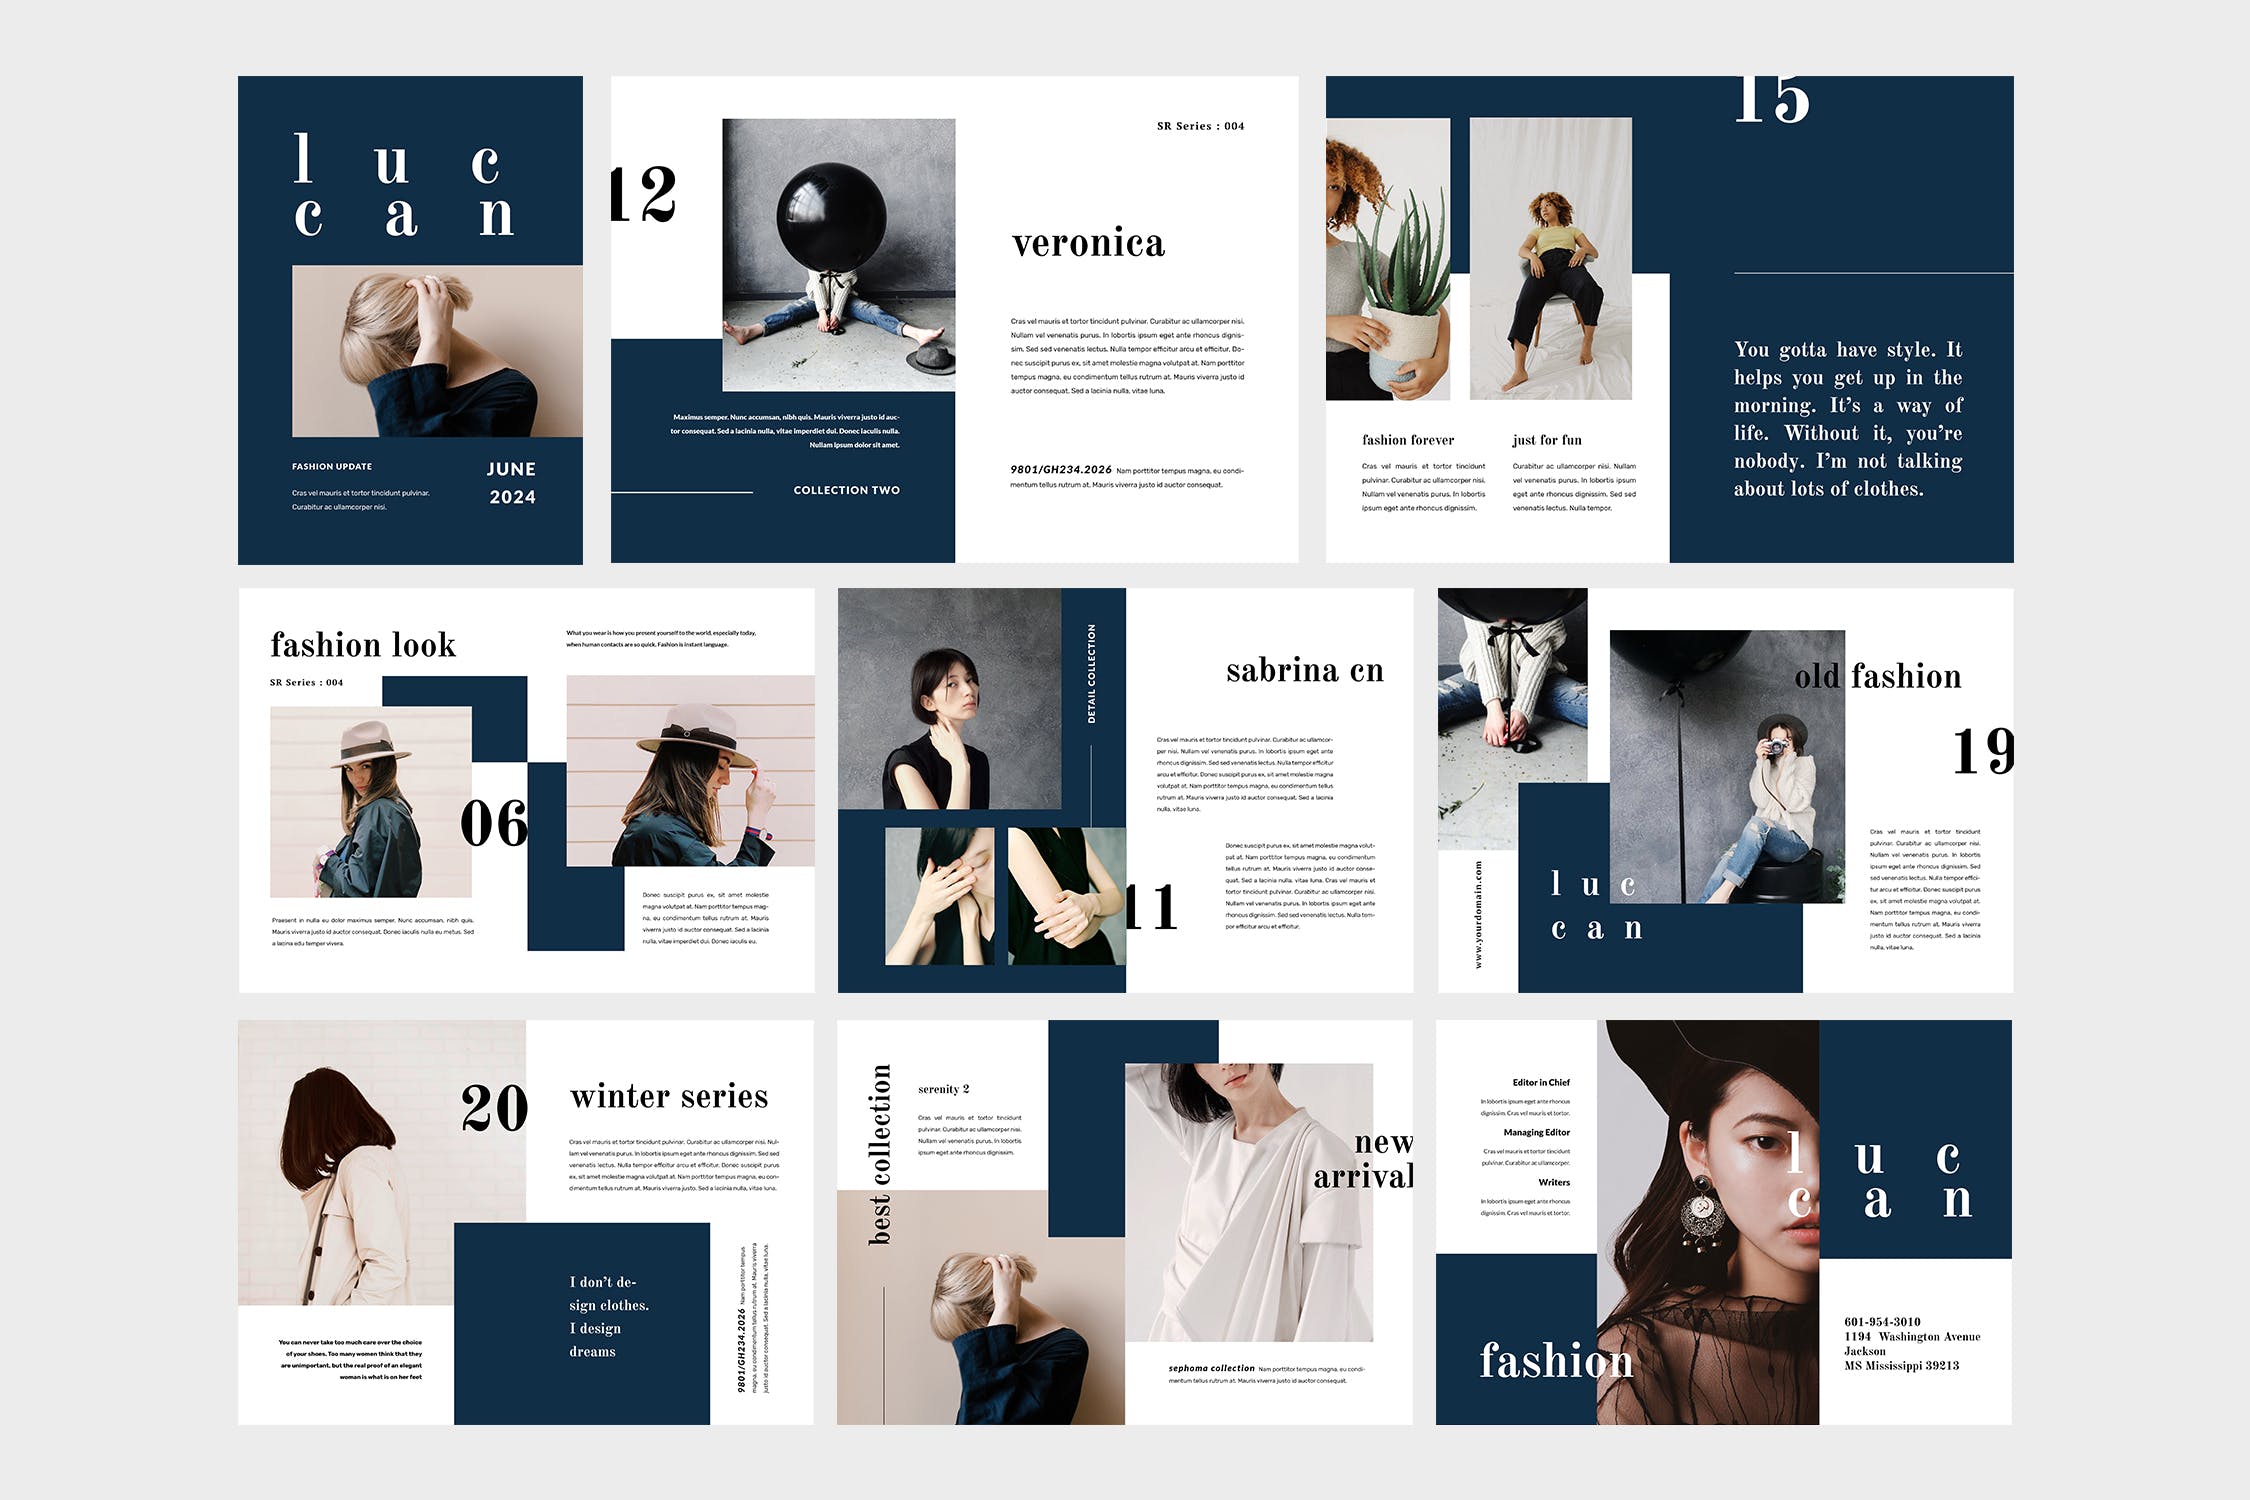 高端女性服装品牌产品素材库精选目录设计模板 Luccan Fashion Lookbook Catalogue插图(4)